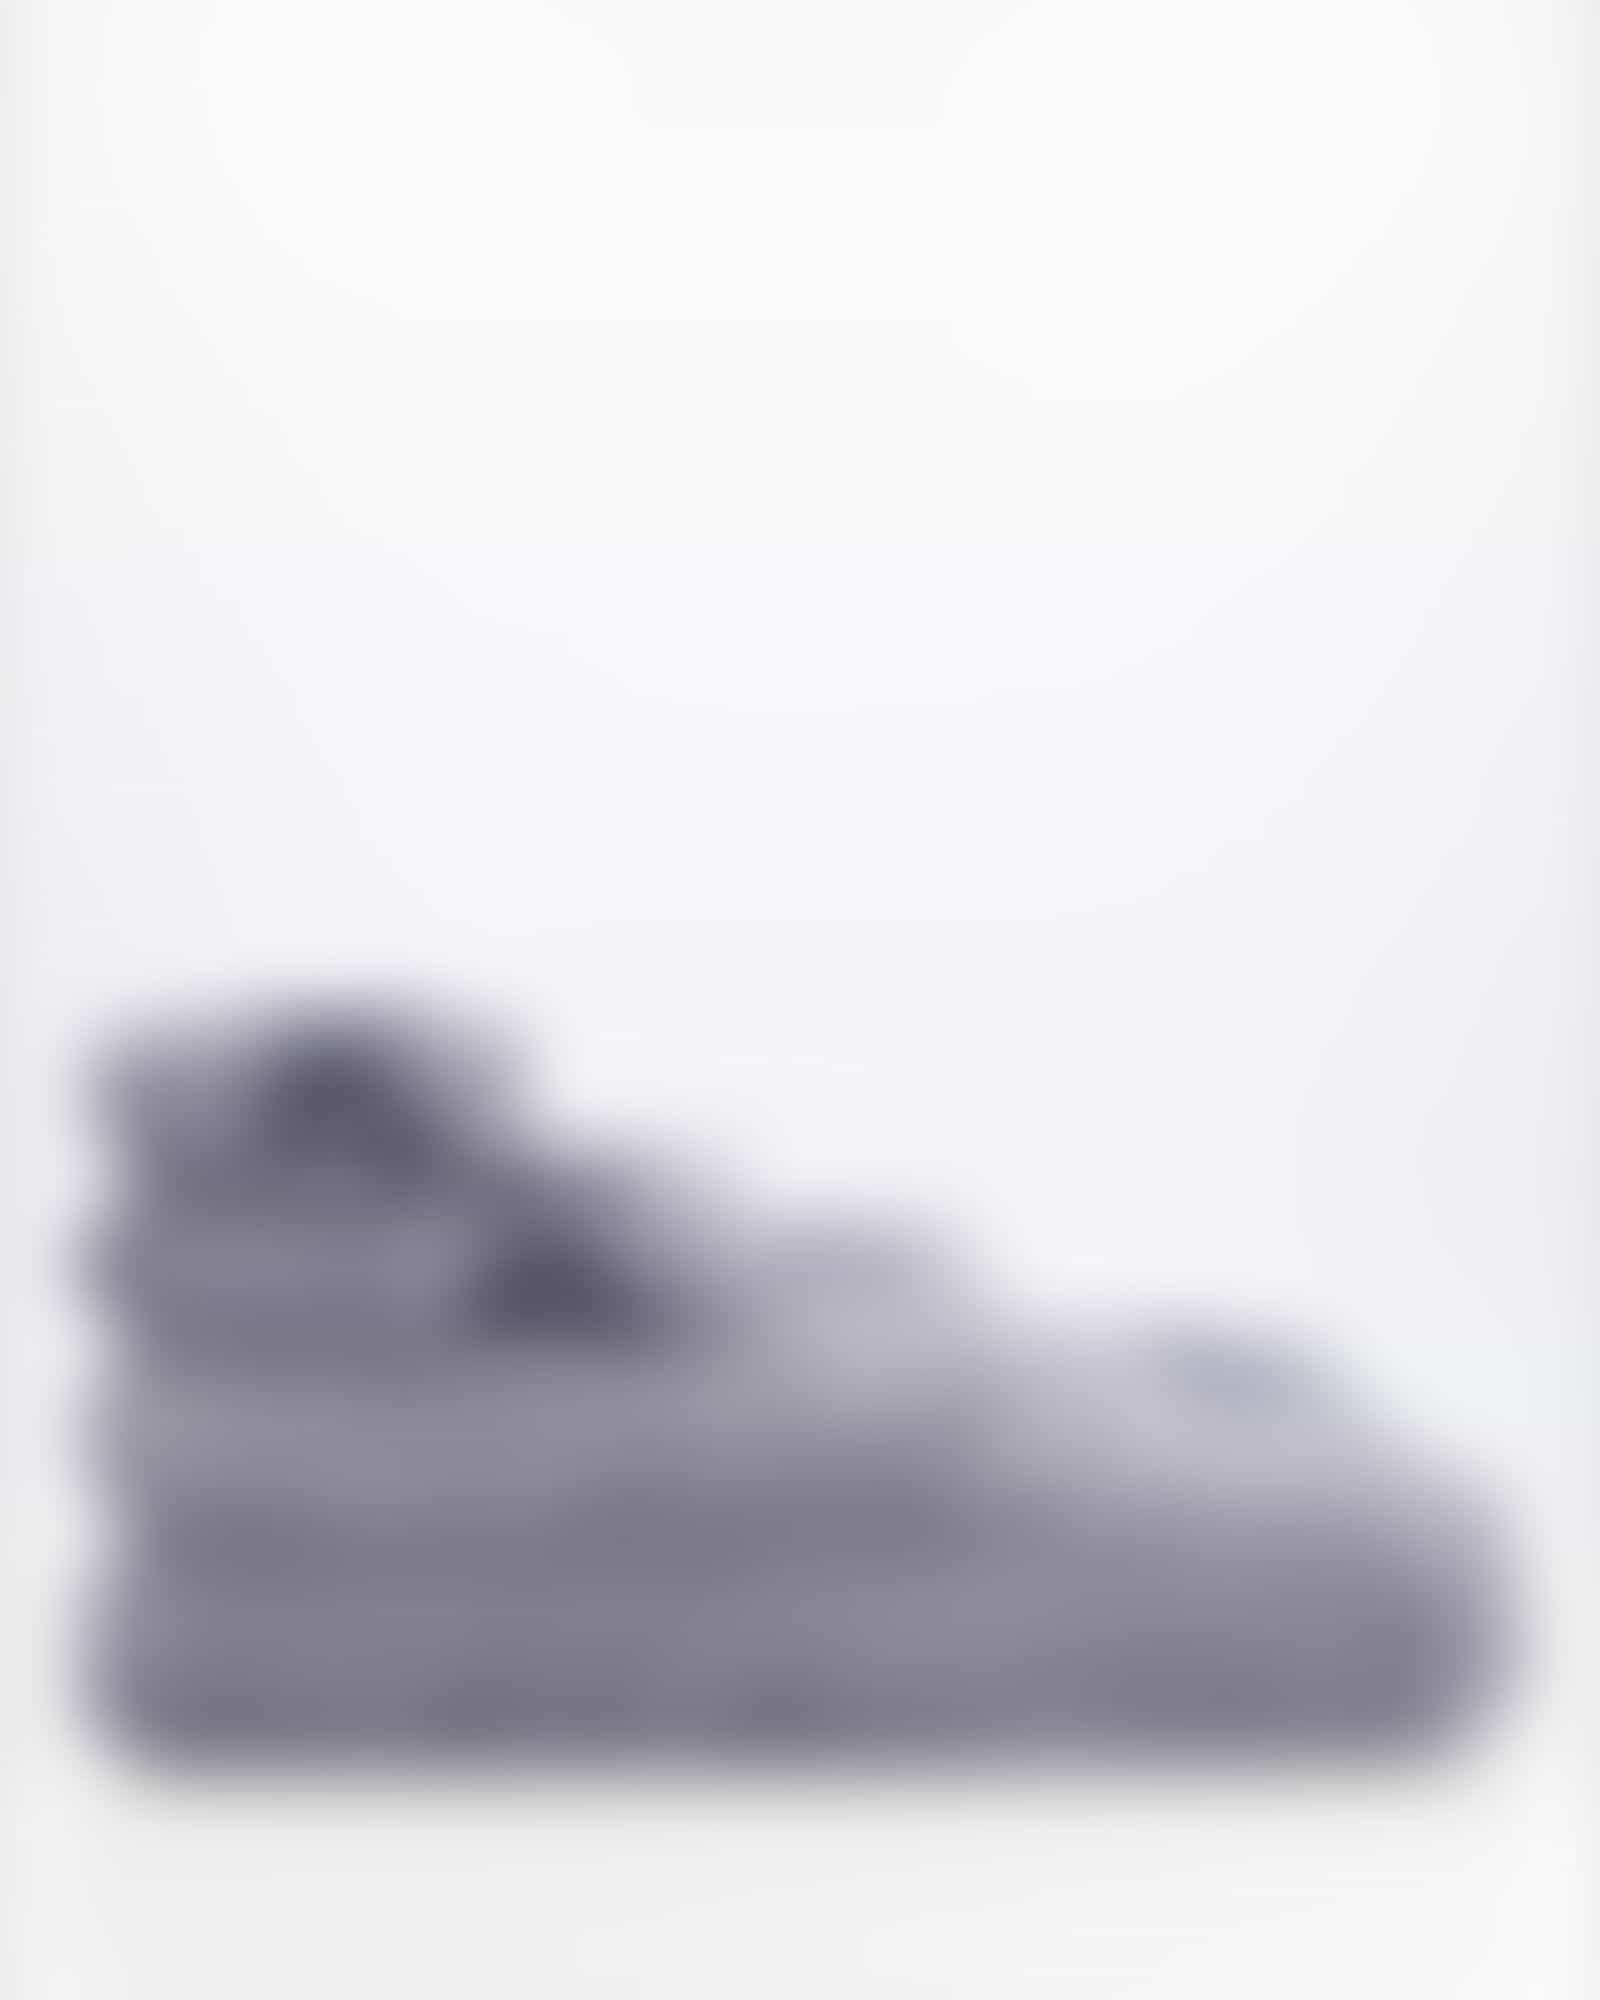 JOOP! Handtücher Classic Doubleface 1600 - Farbe: denim - 19 - Duschtuch 80x150 cm Detailbild 3